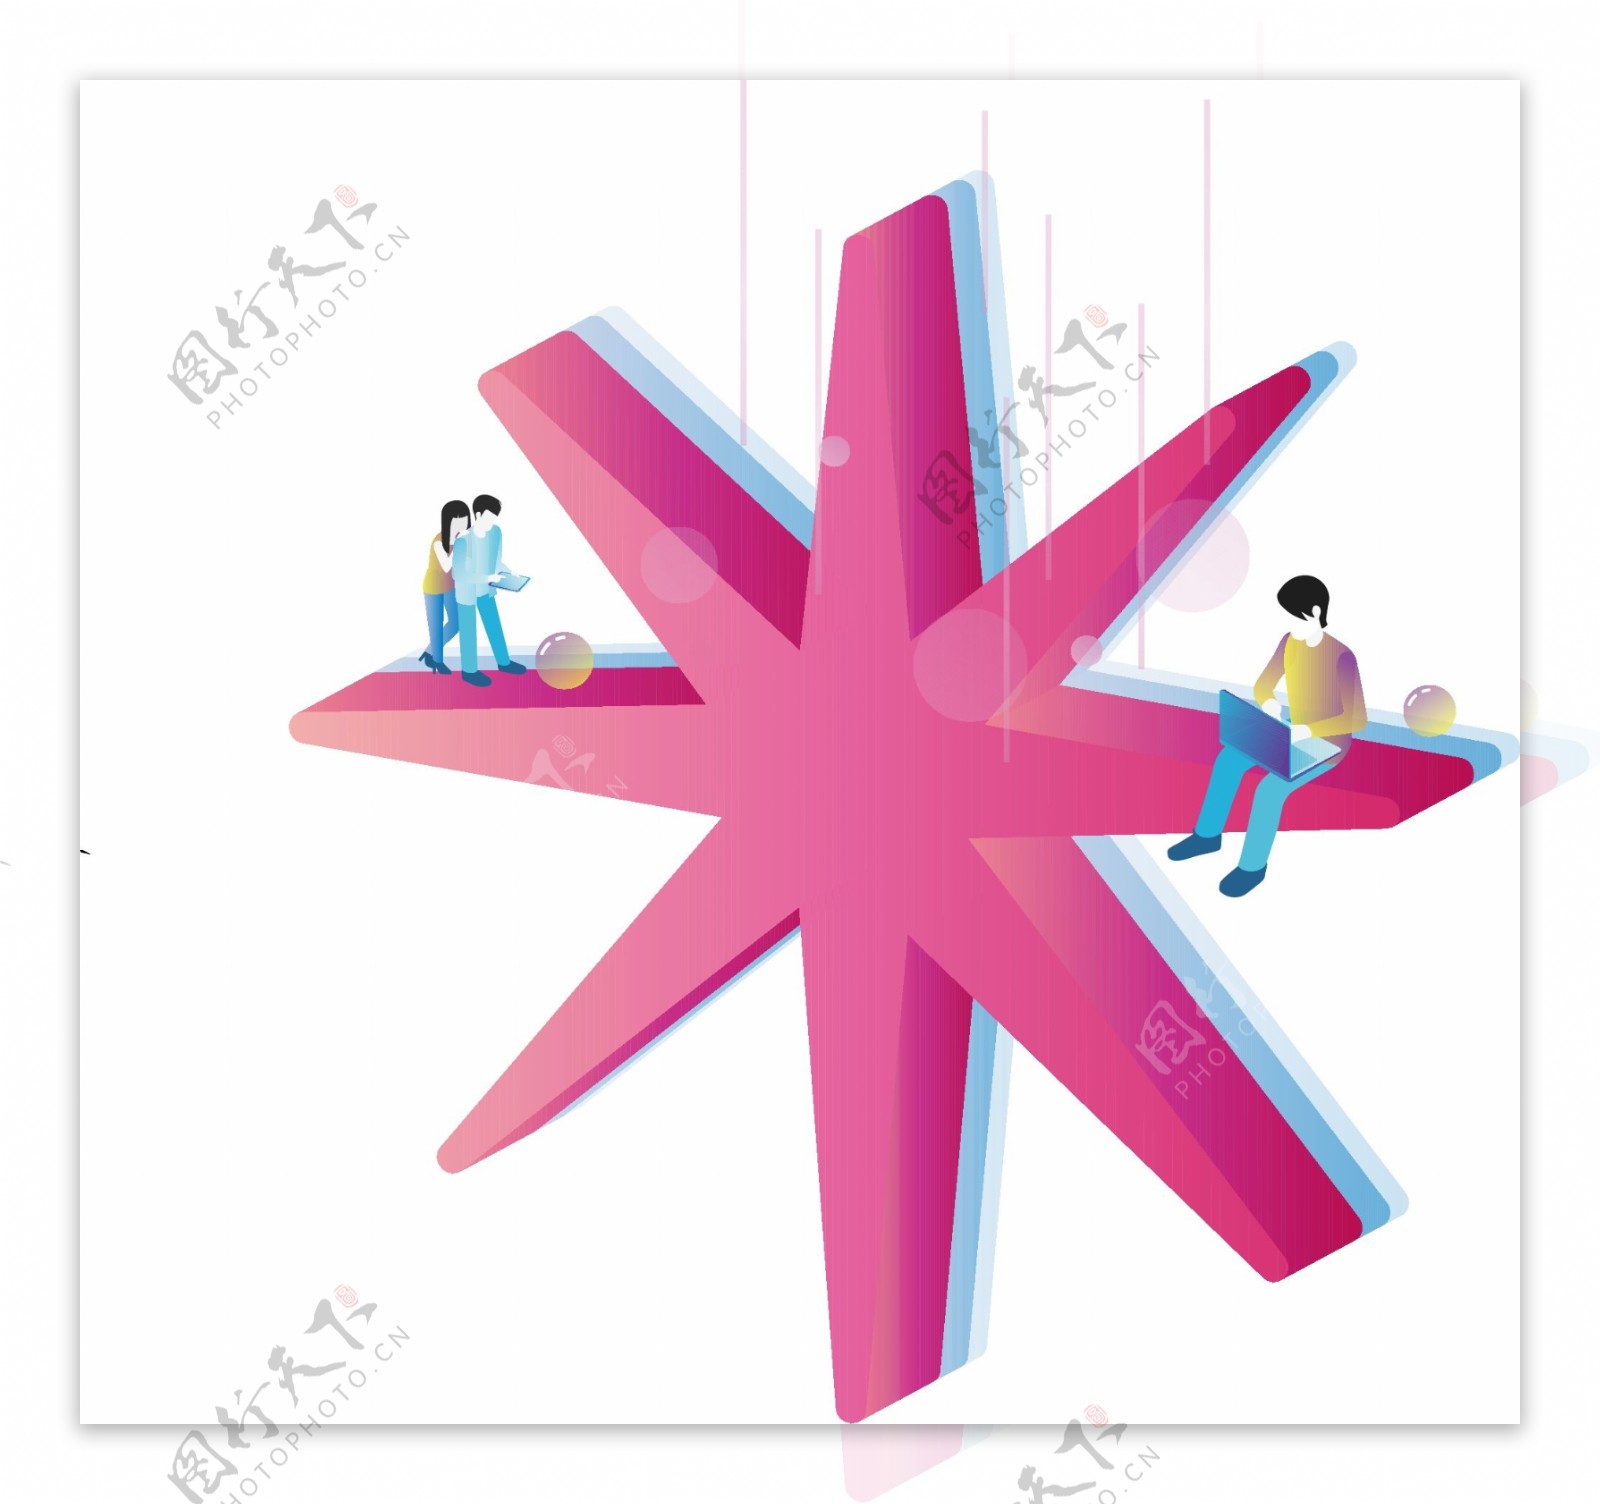 星星6原创2.5D设计元素图标合集粉红色